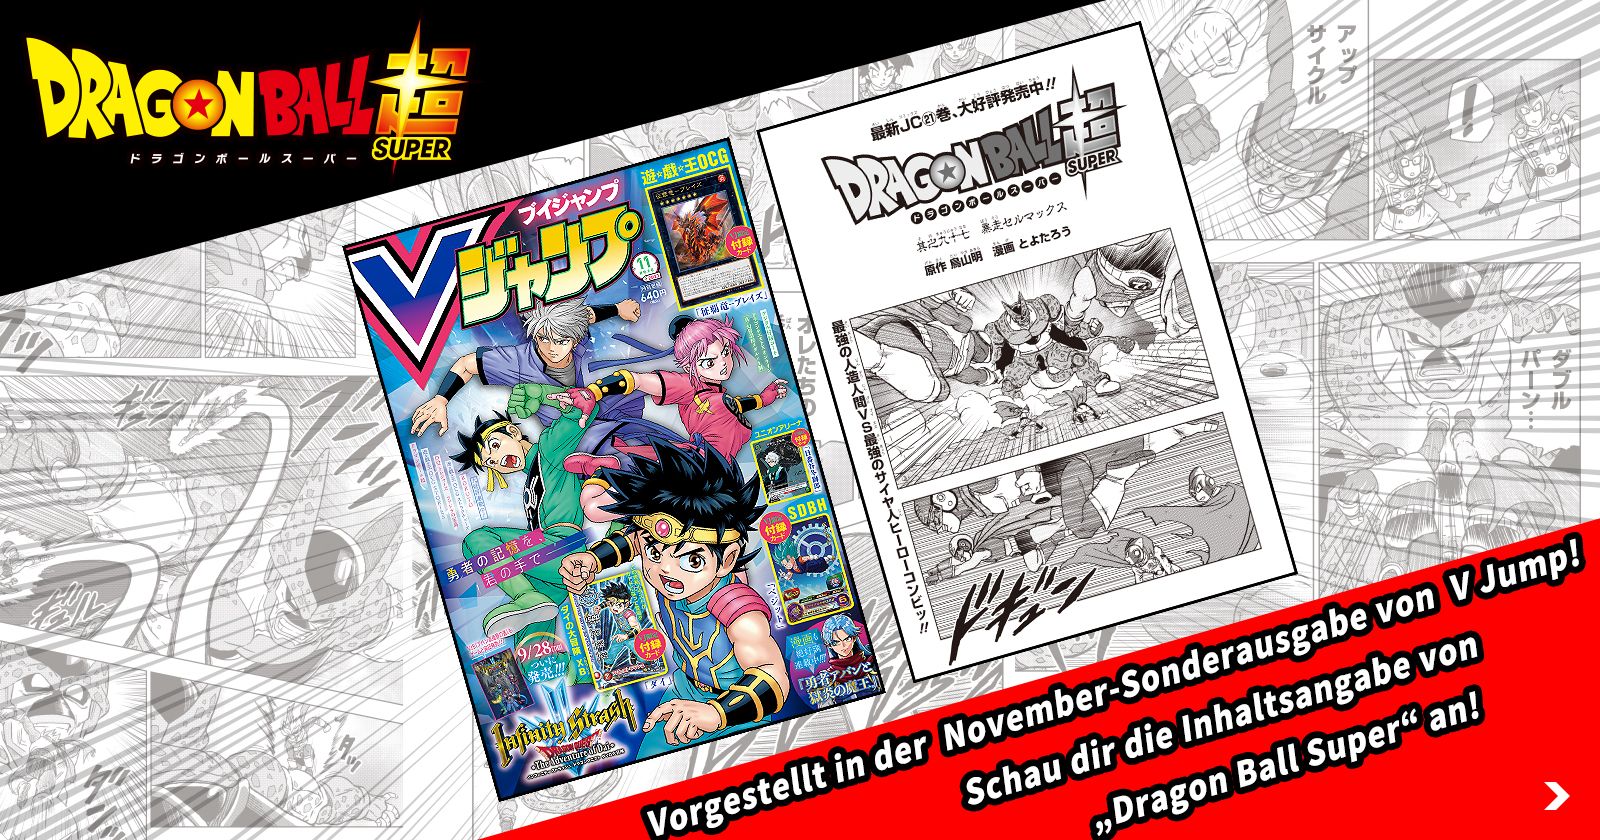 Neues Dragon Ball Super Kapitel in der Super-Size-Novemberausgabe von V Jump! Schauen Sie sich die bisherige Geschichte an!